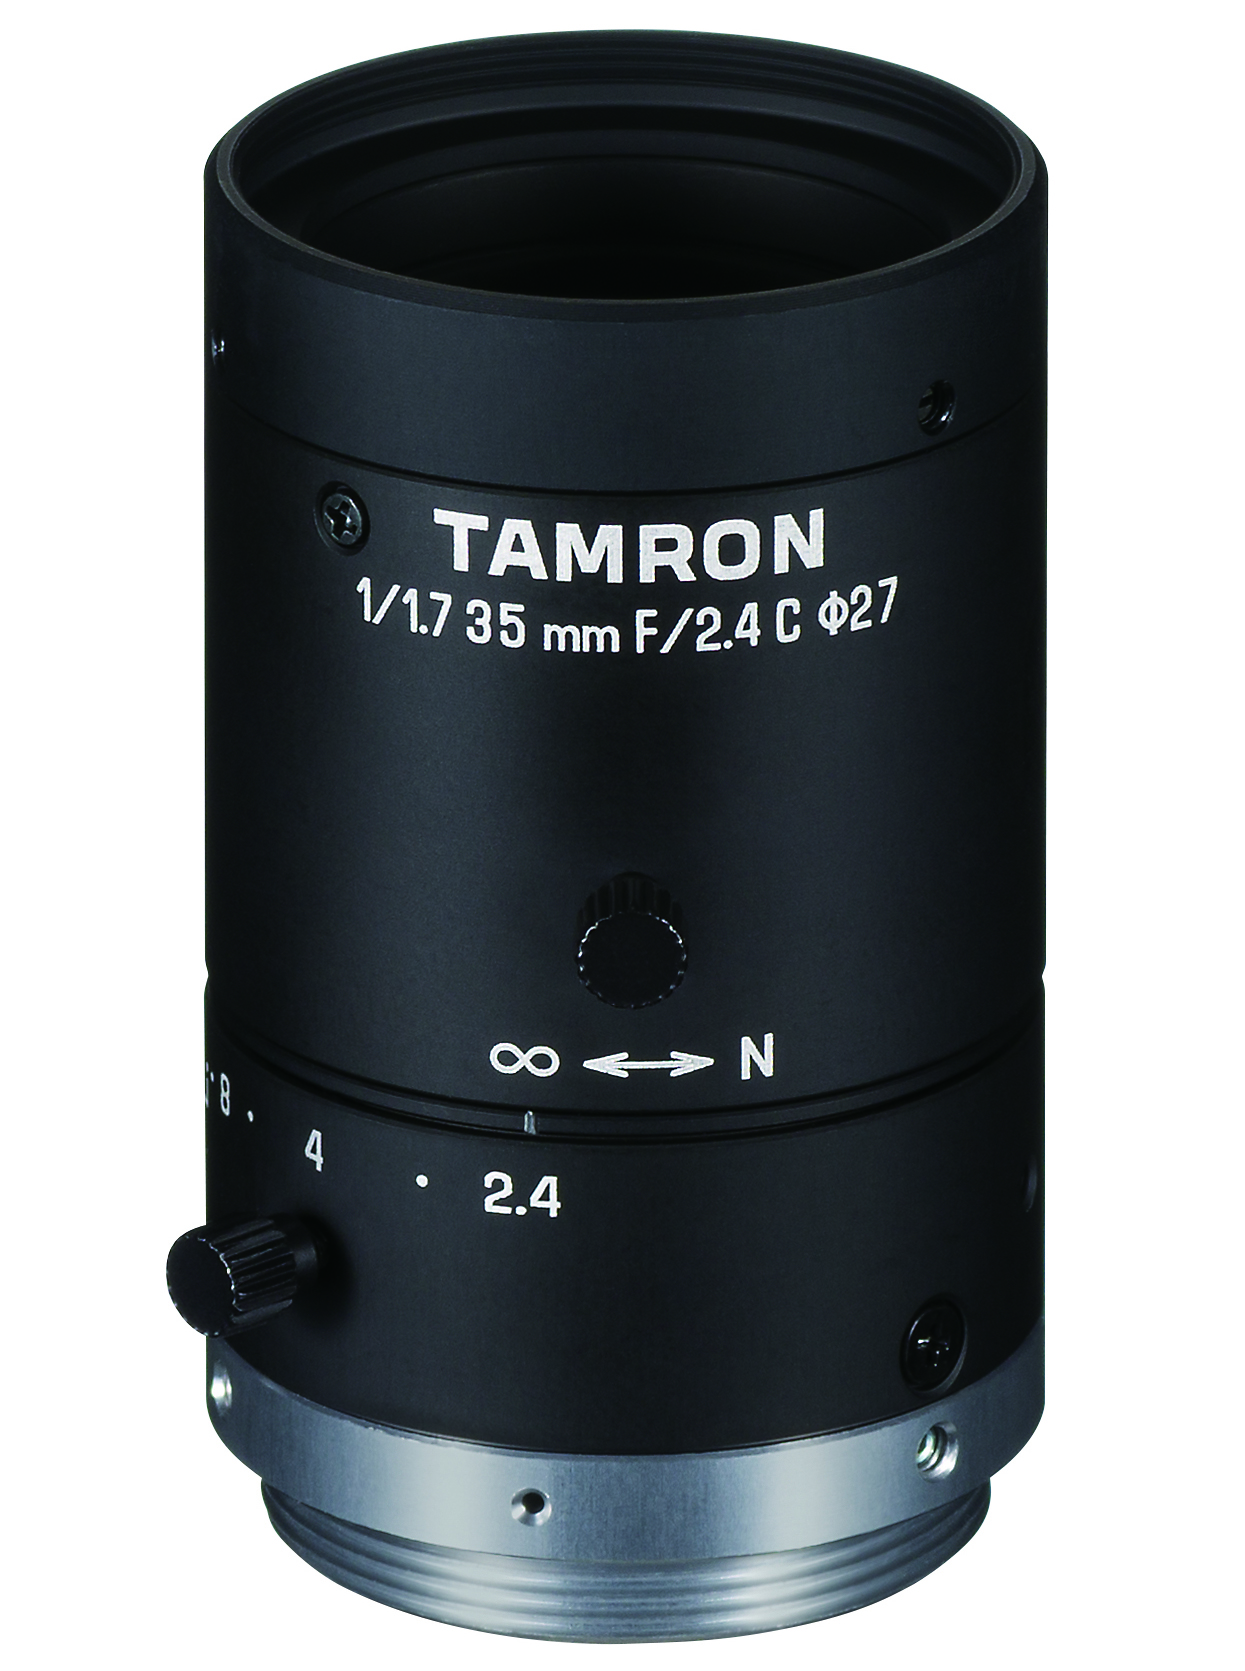 lens: Model M117FM35